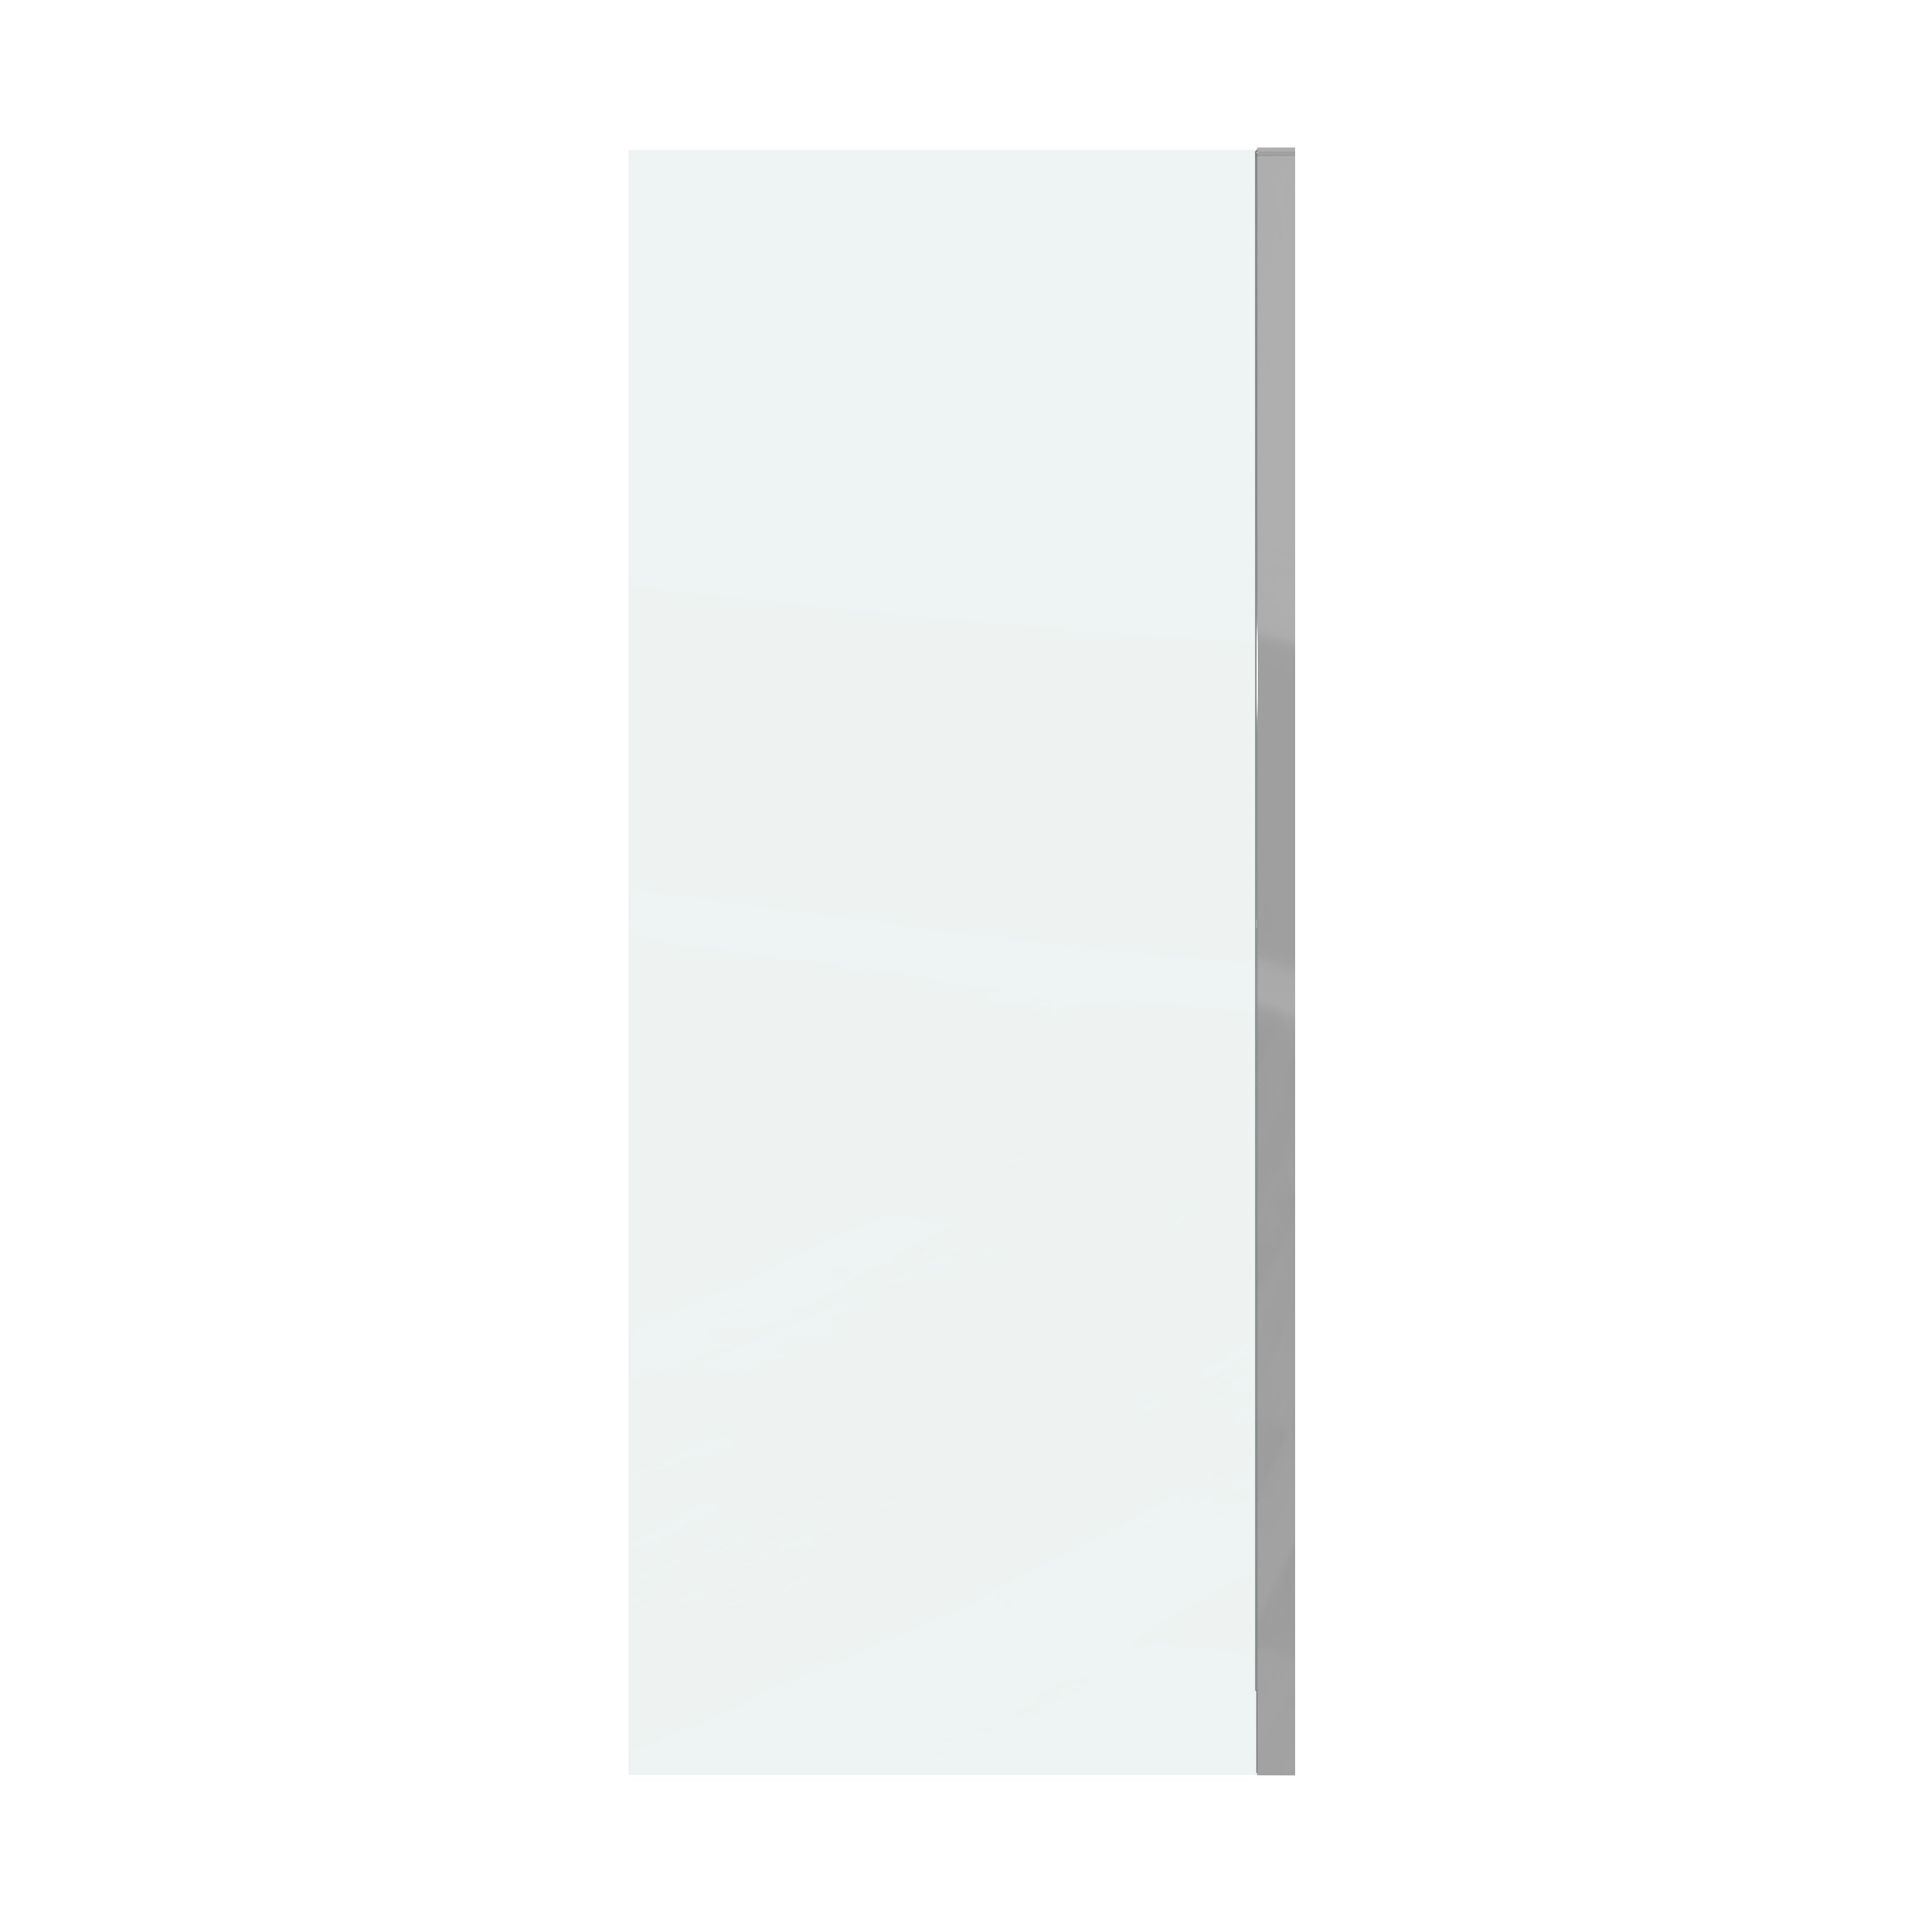 Боковая стенка Grossman Classic 90x195 200.K33.04.90.10.00 стекло прозрачное, профиль хром